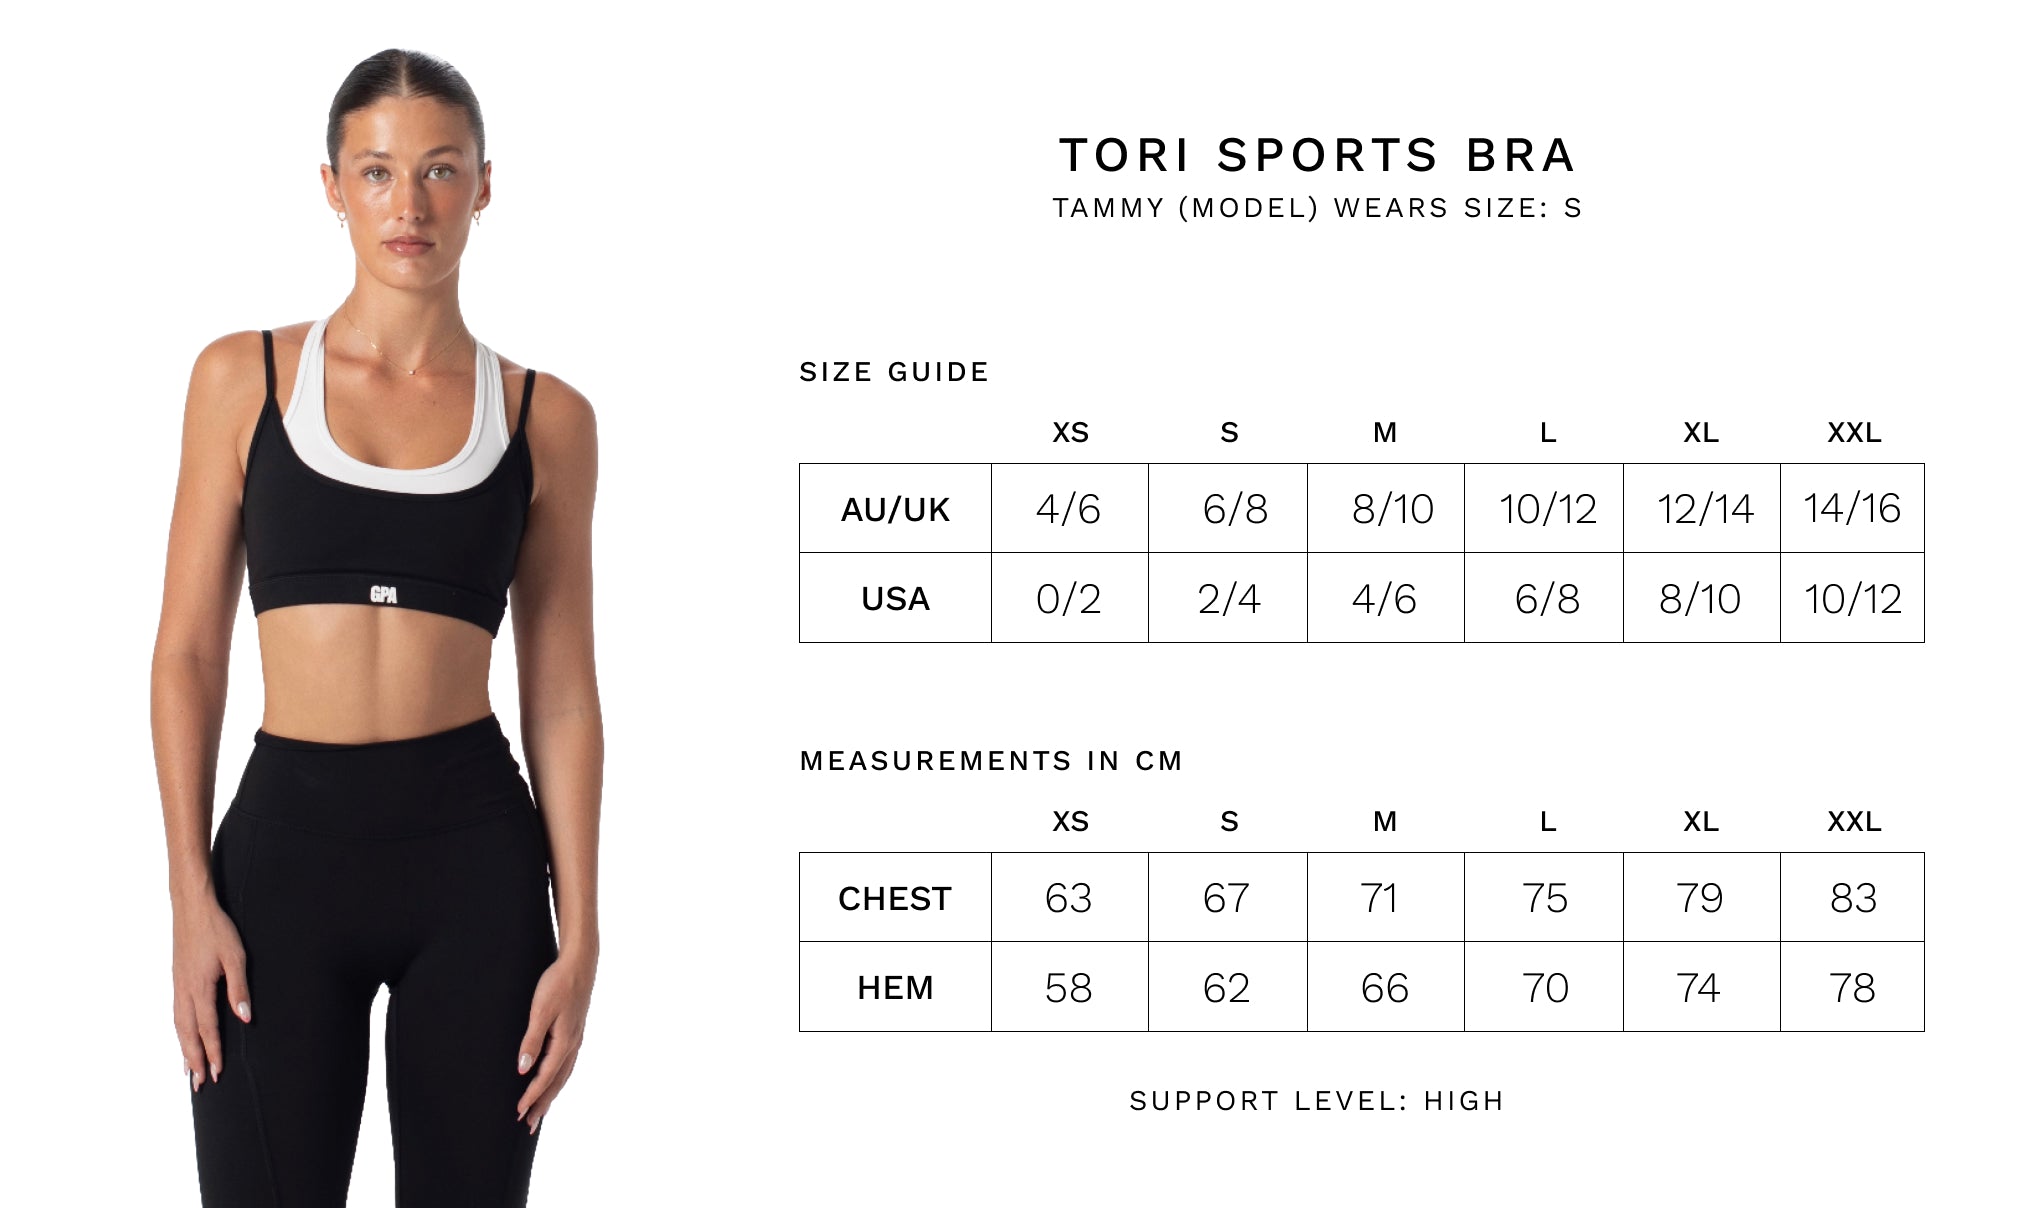 Tori Sports Bra Size Guide